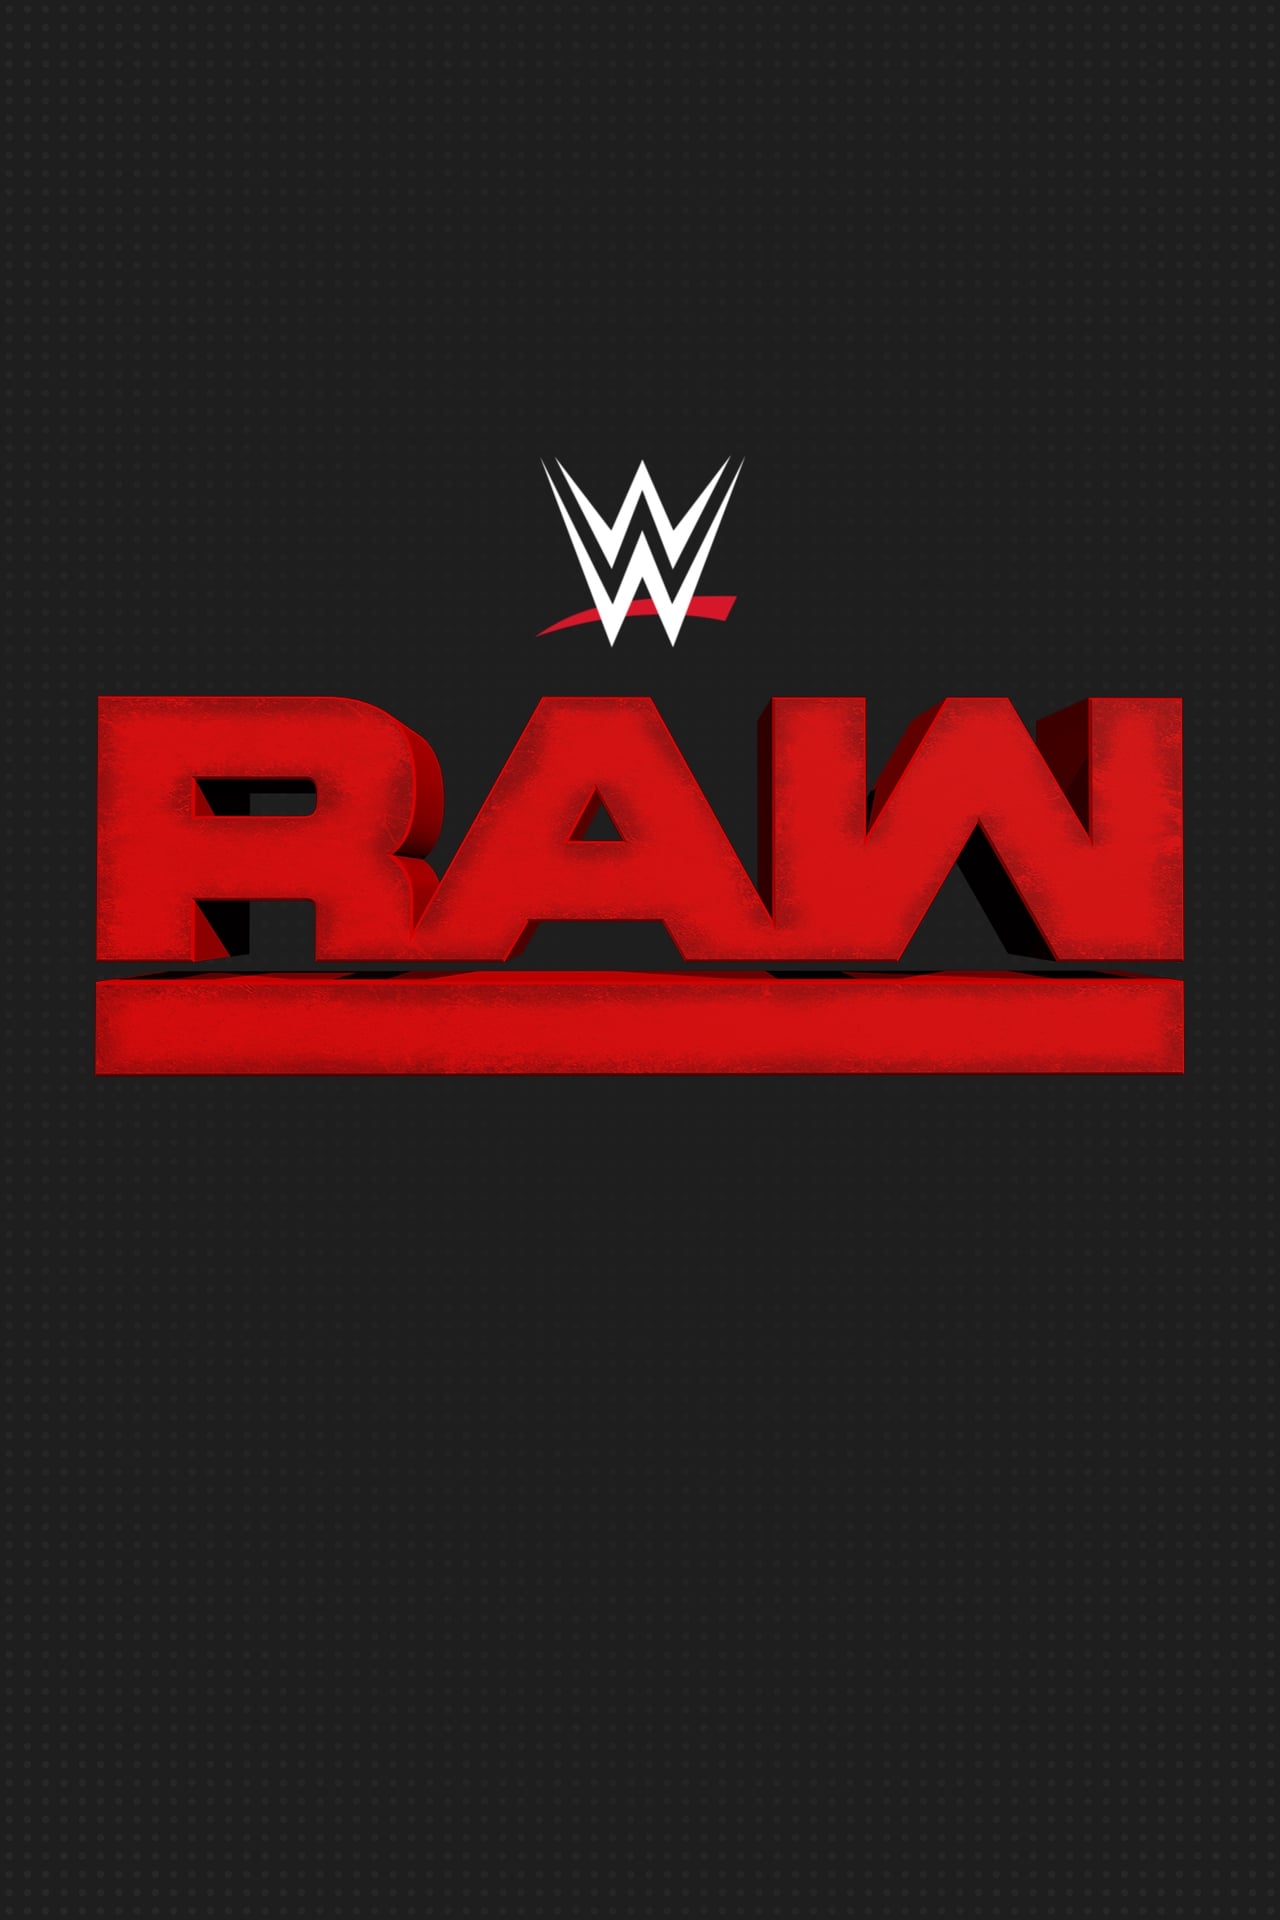 Wwe Raw (1998)